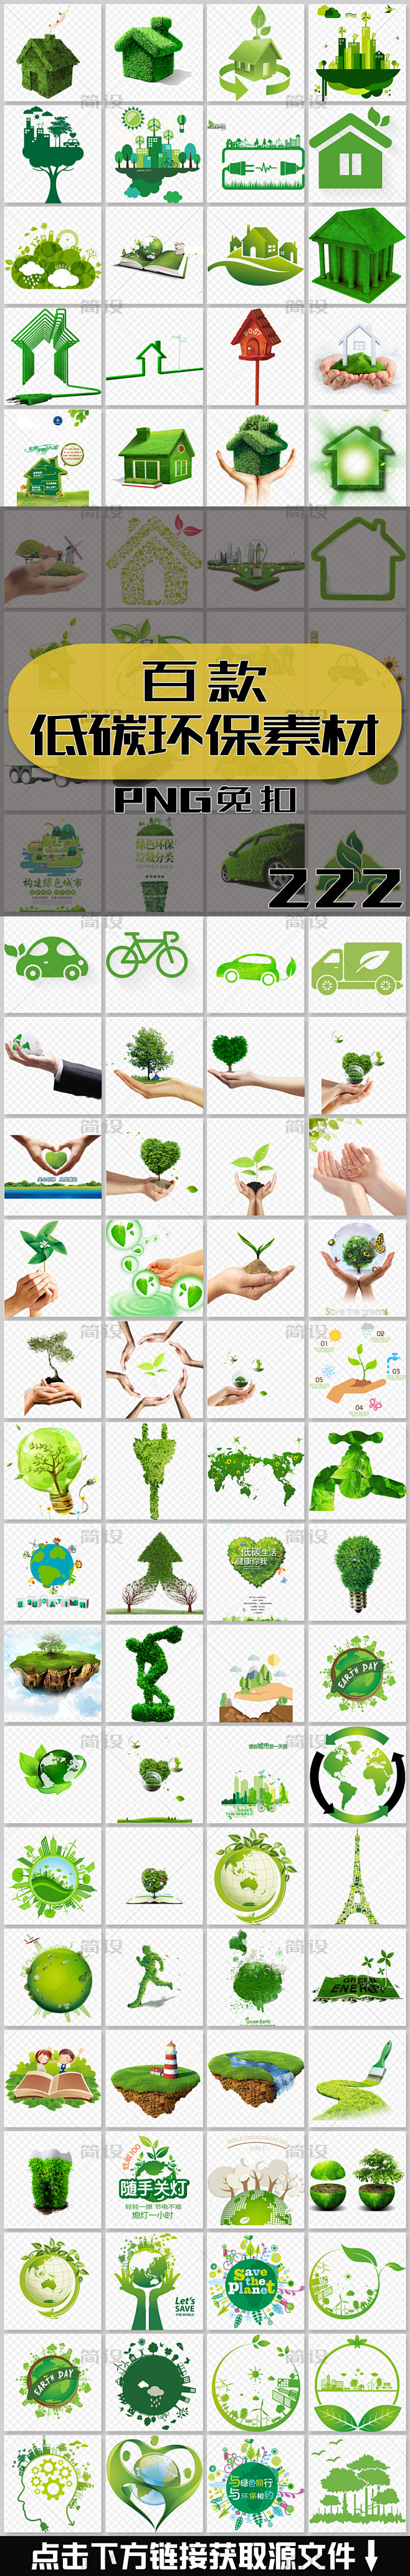 环保标志 环保海报 环保小报 低碳环保 ...